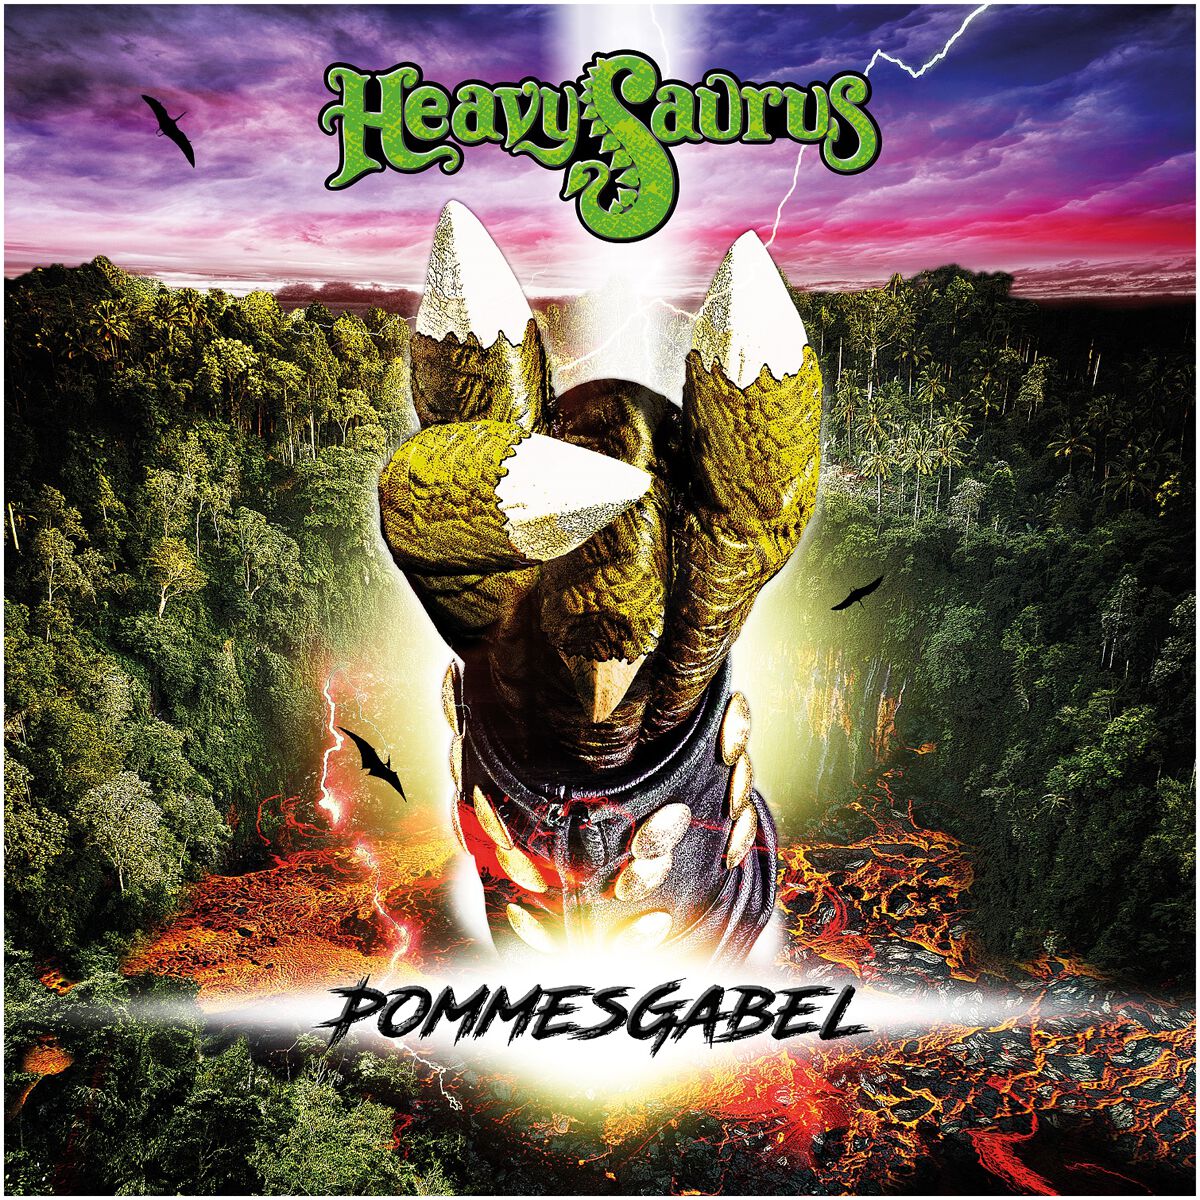 Pommesgabel von Heavysaurus - LP (Coloured, Limited Edition, Standard)